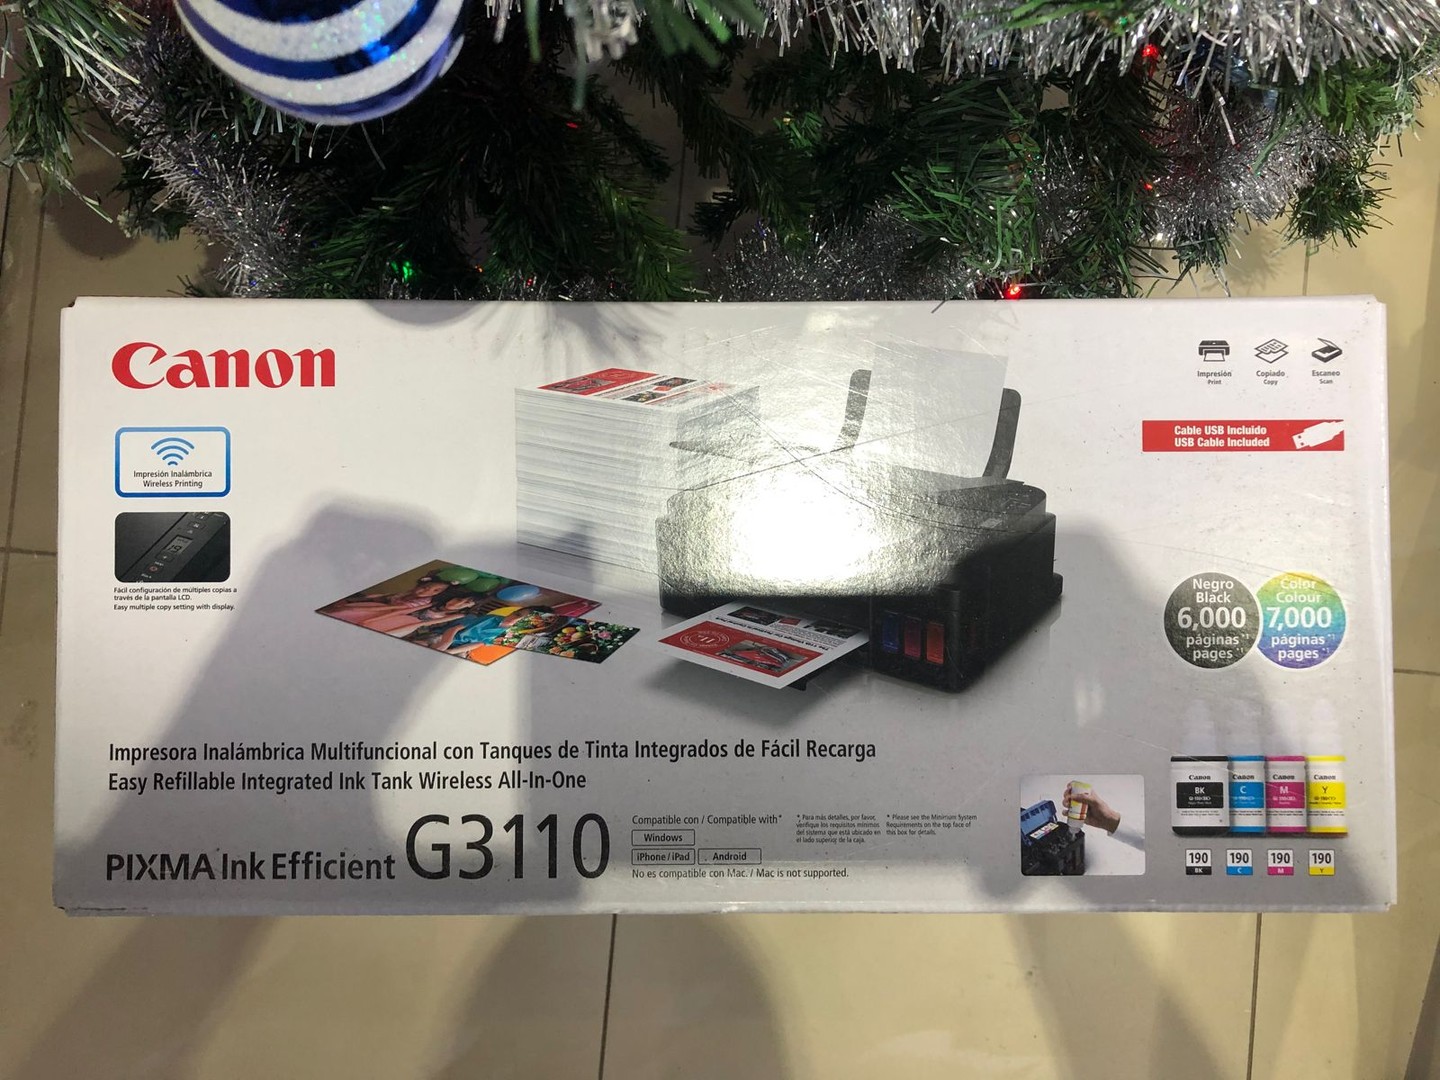 impresoras y scanners - Impresora Canon G3110 Multifuncional a Wifi Nueva y Sellada, Factura y Garantia 5